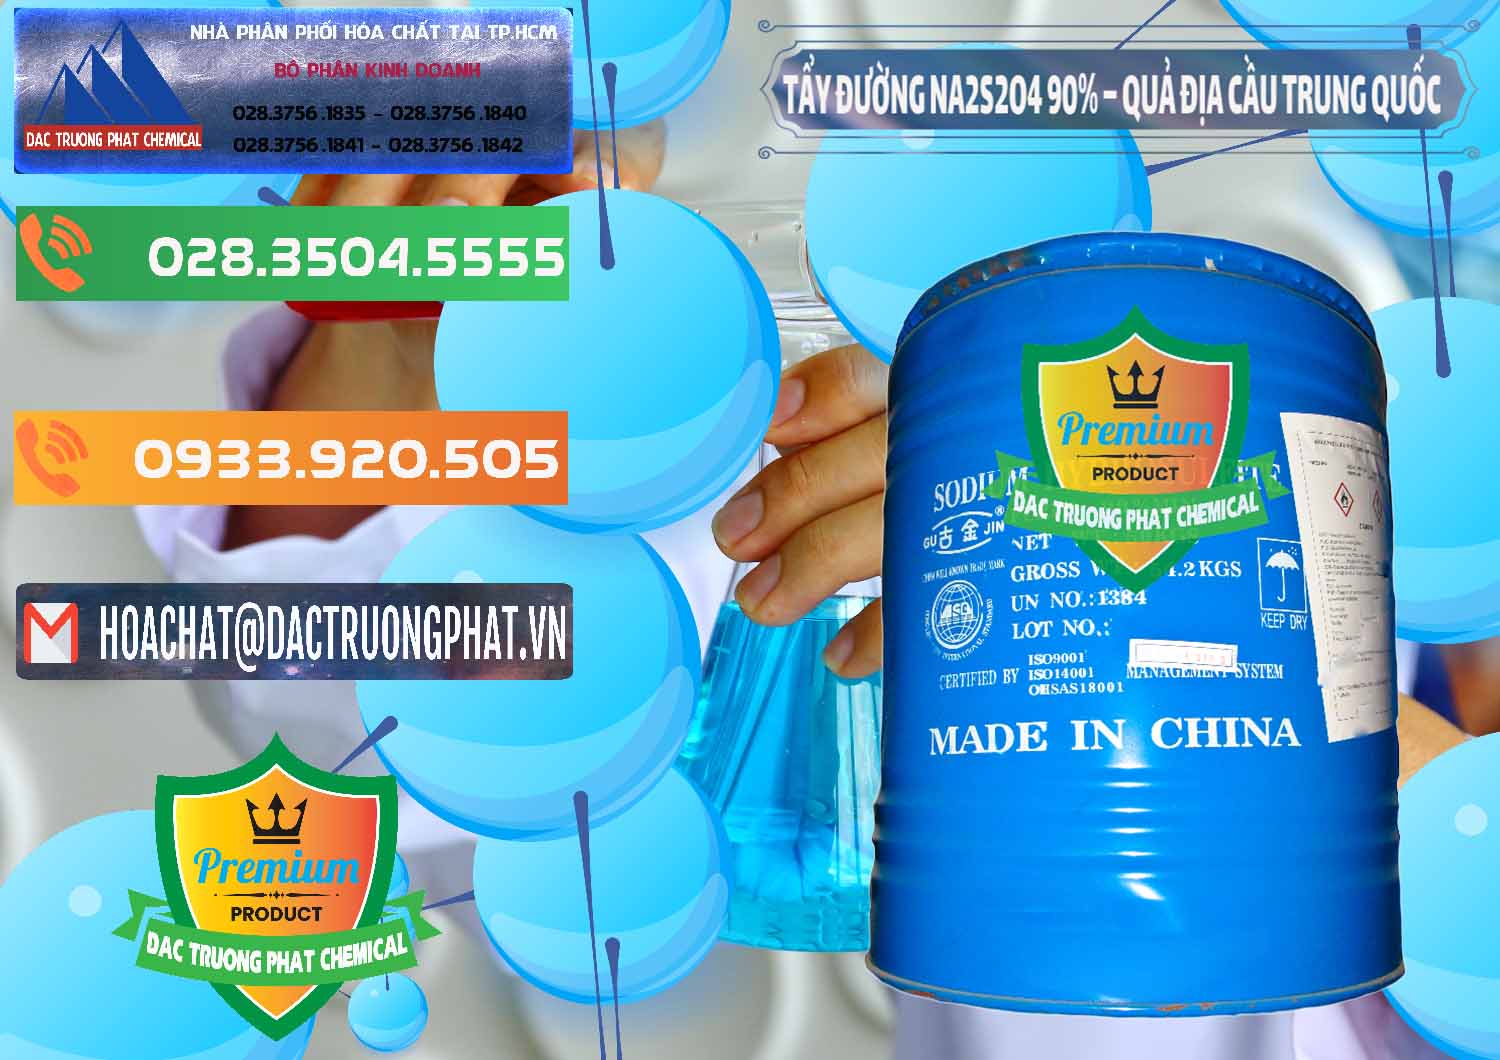 Cty chuyên kinh doanh ( bán ) Tẩy Đường - NA2S2O4 Logo Quả Địa Cầu Trung Quốc China - 0159 - Bán và cung cấp hóa chất tại TP.HCM - hoachatxulynuoc.com.vn